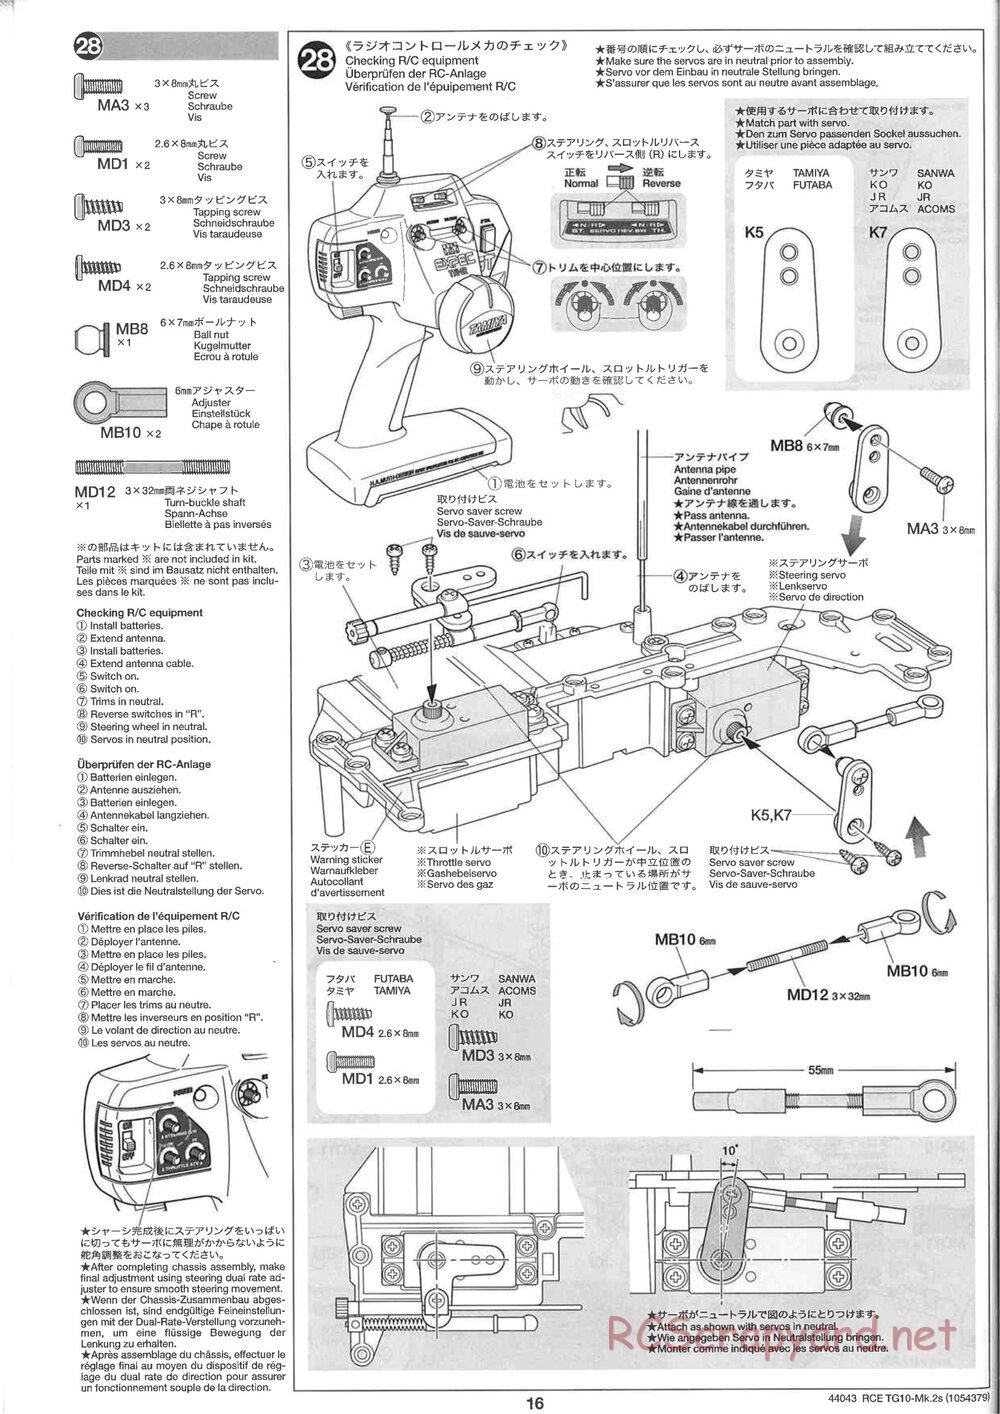 Tamiya - TG10 Mk.2s Chassis - Manual - Page 17